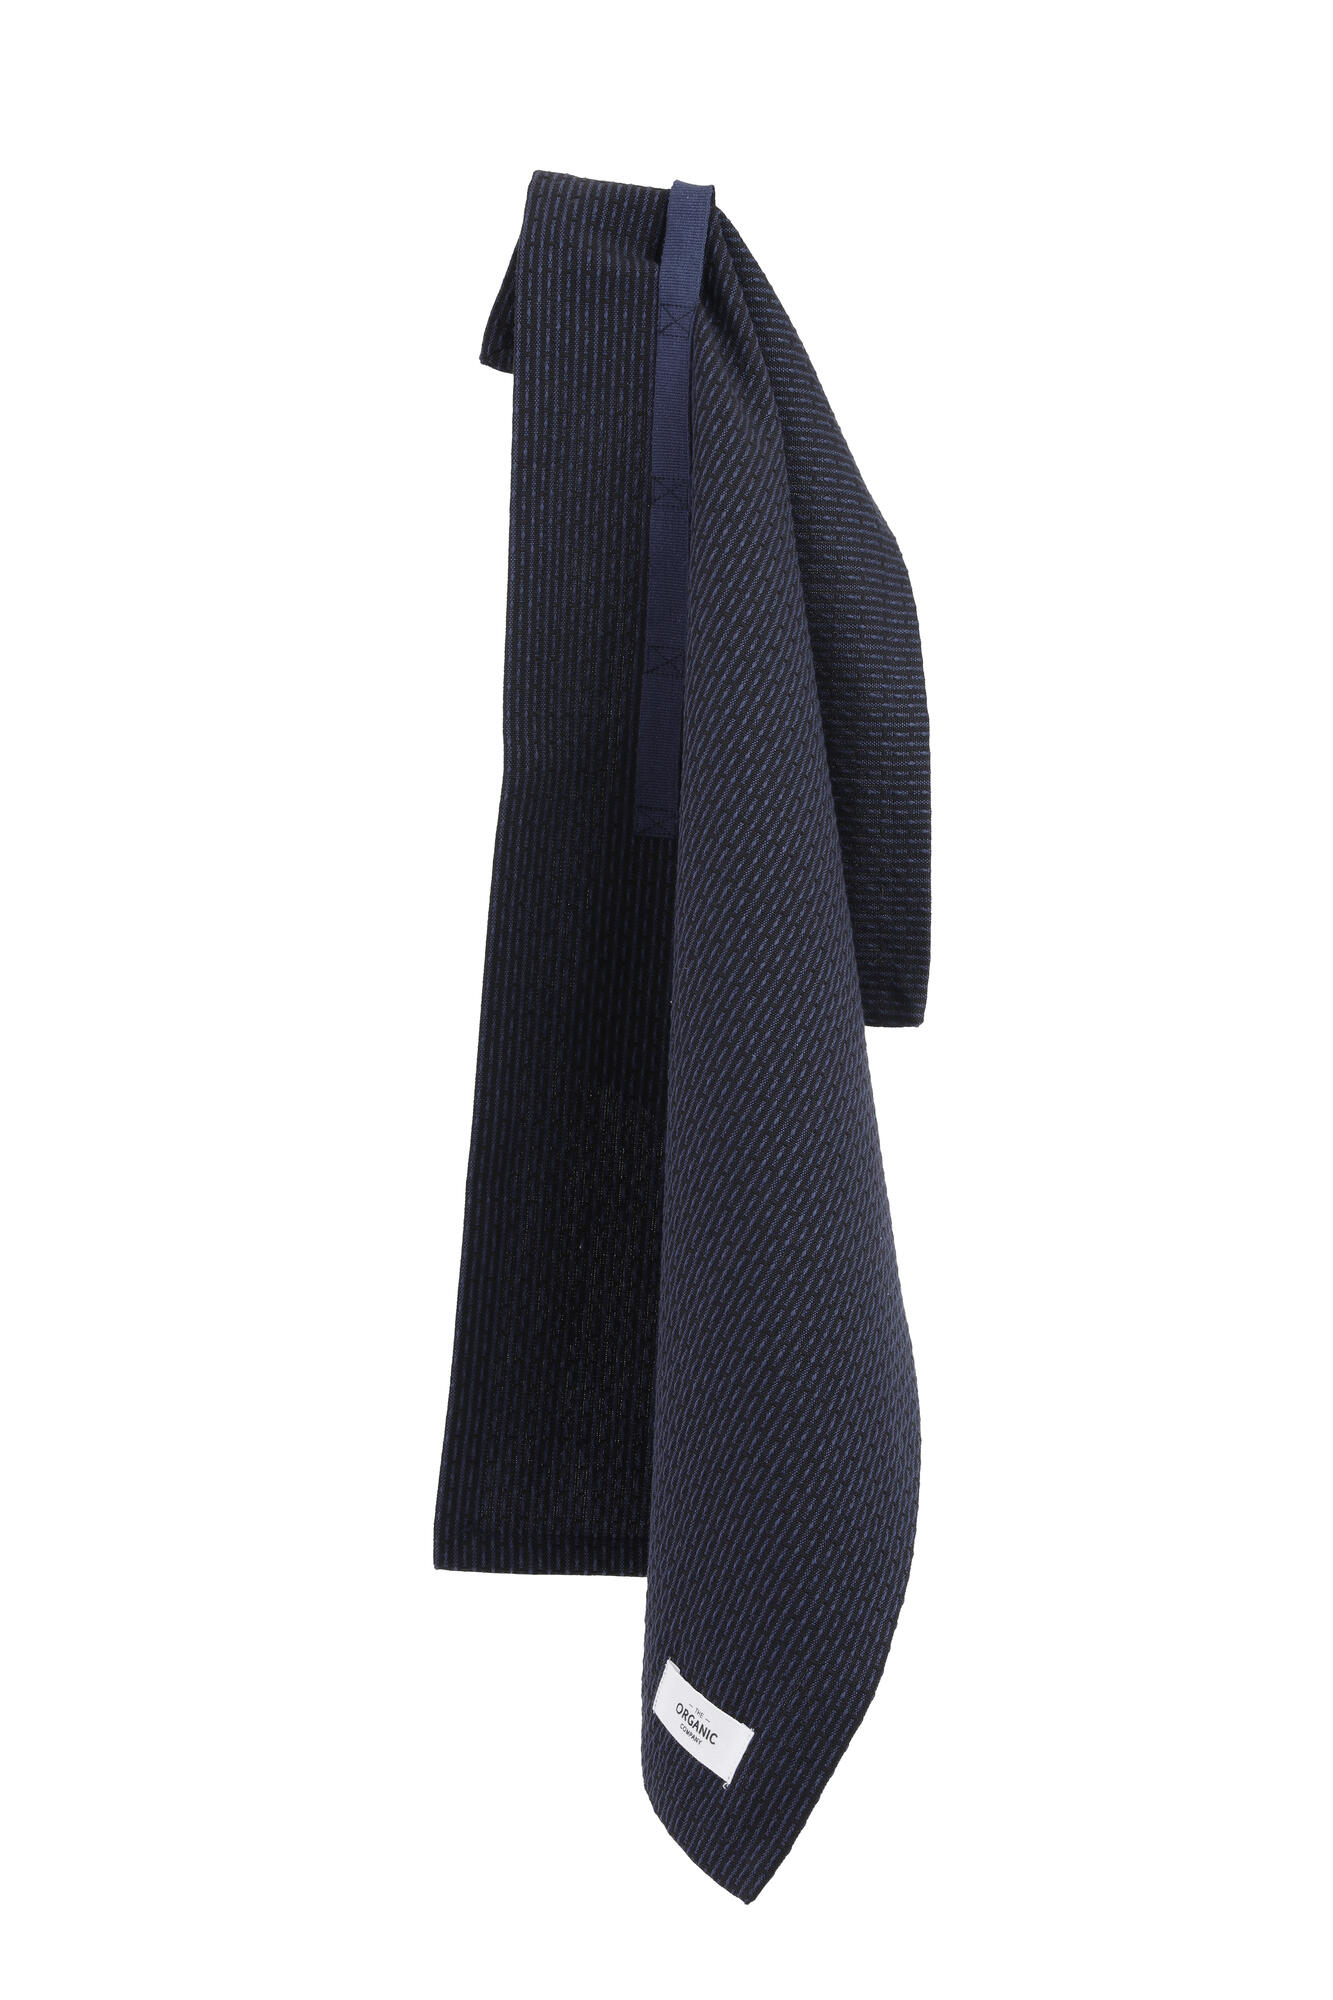 Håndklæde - Sort / mørkeblå 35 x 60 cm*